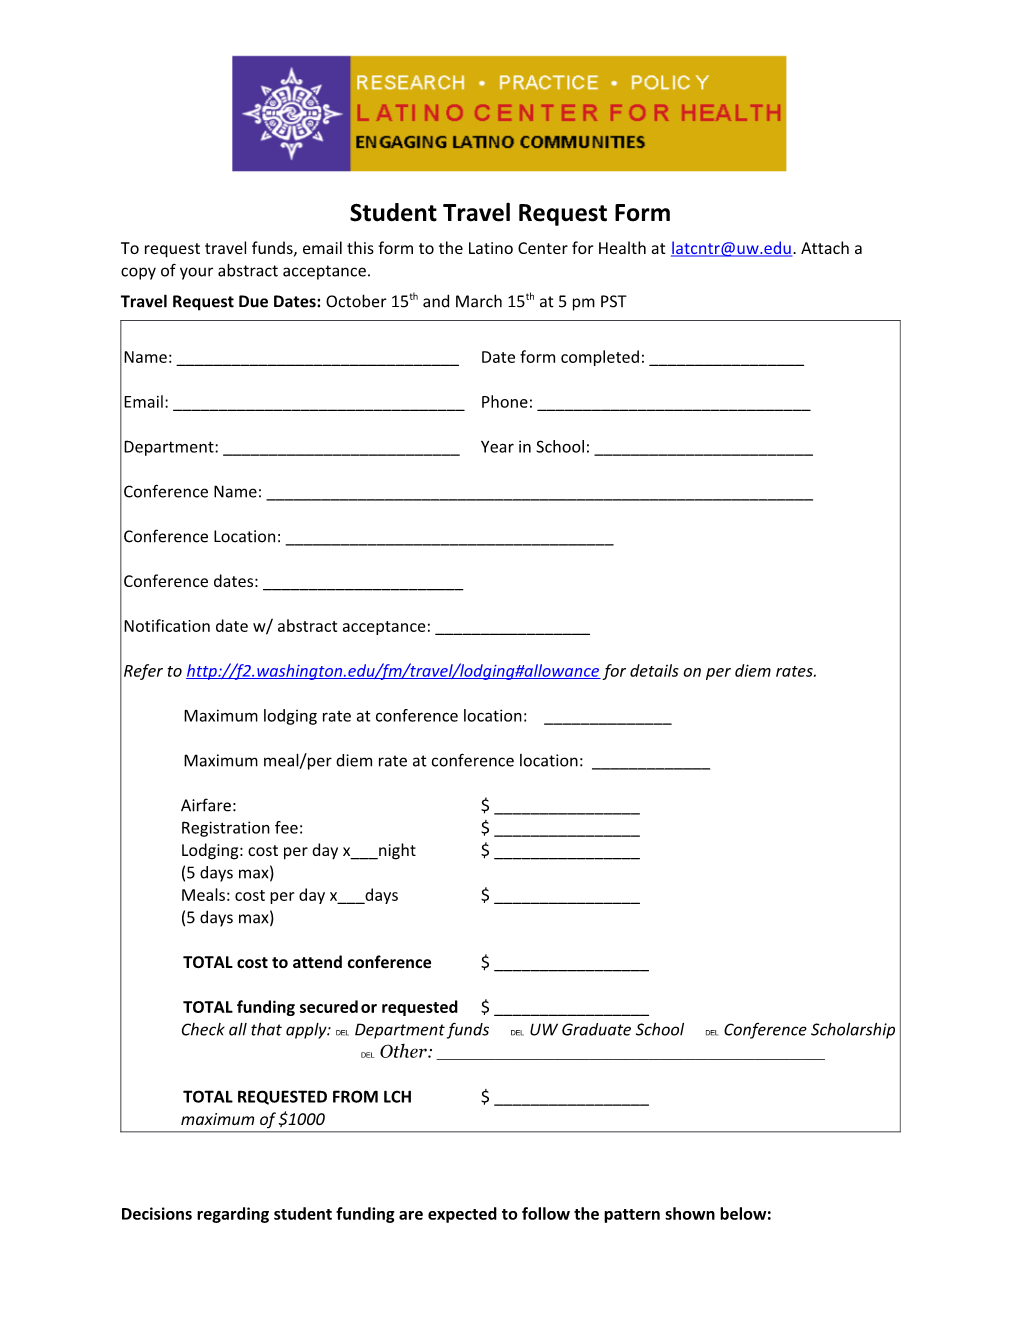 Student Travel Award Program